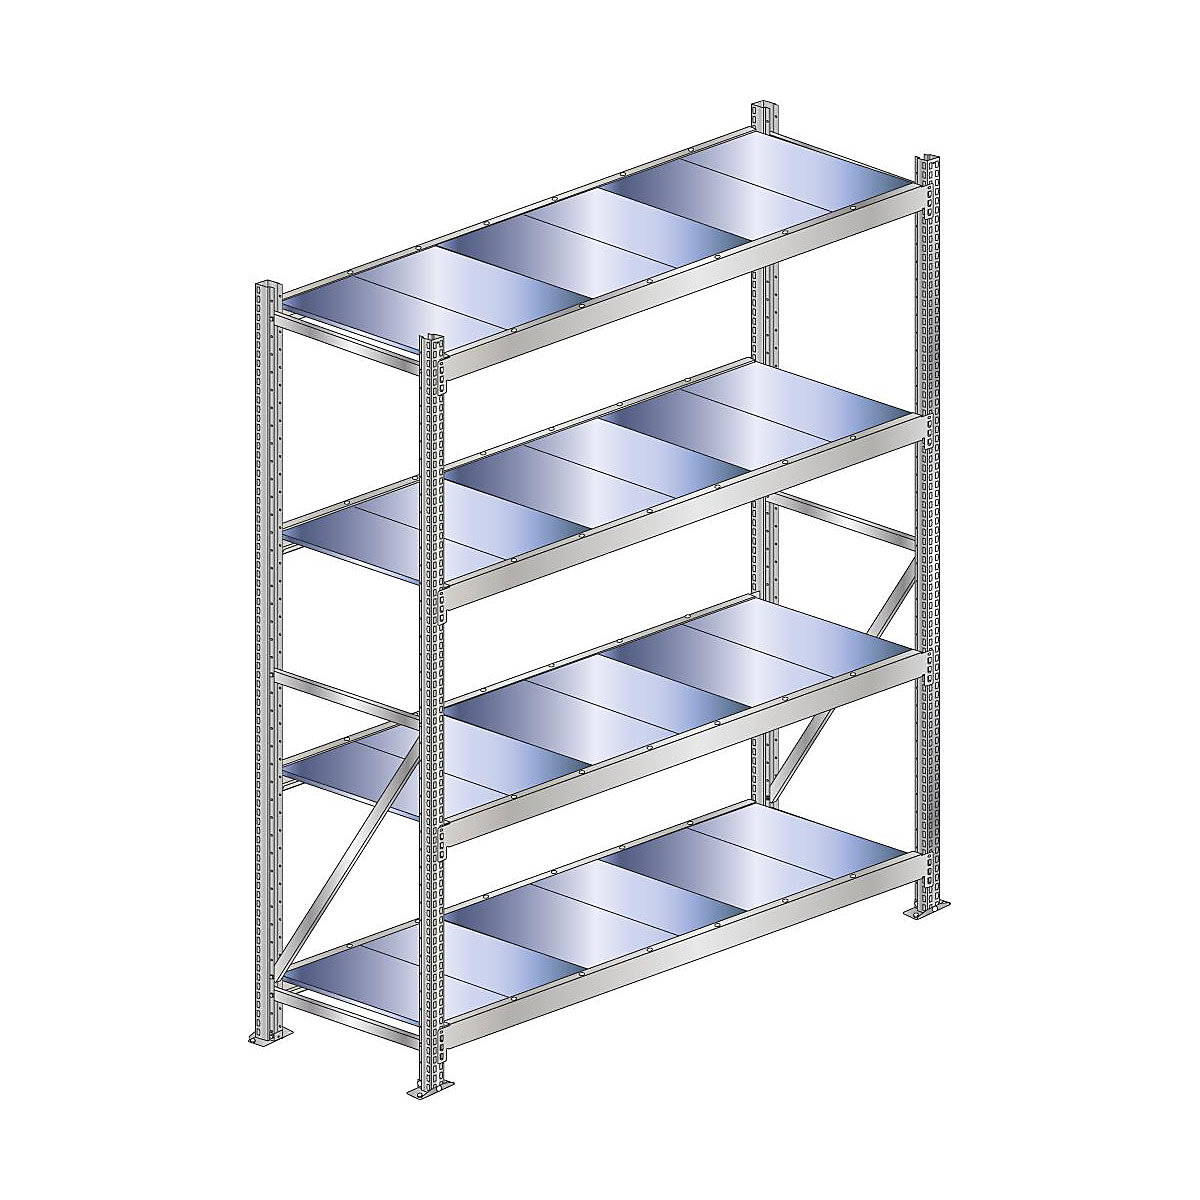 Wide span shelf unit, shelf load 500 kg – SCHULTE, shelf width 1500 mm, standard shelf unit, height 2500 mm, depth 500 mm